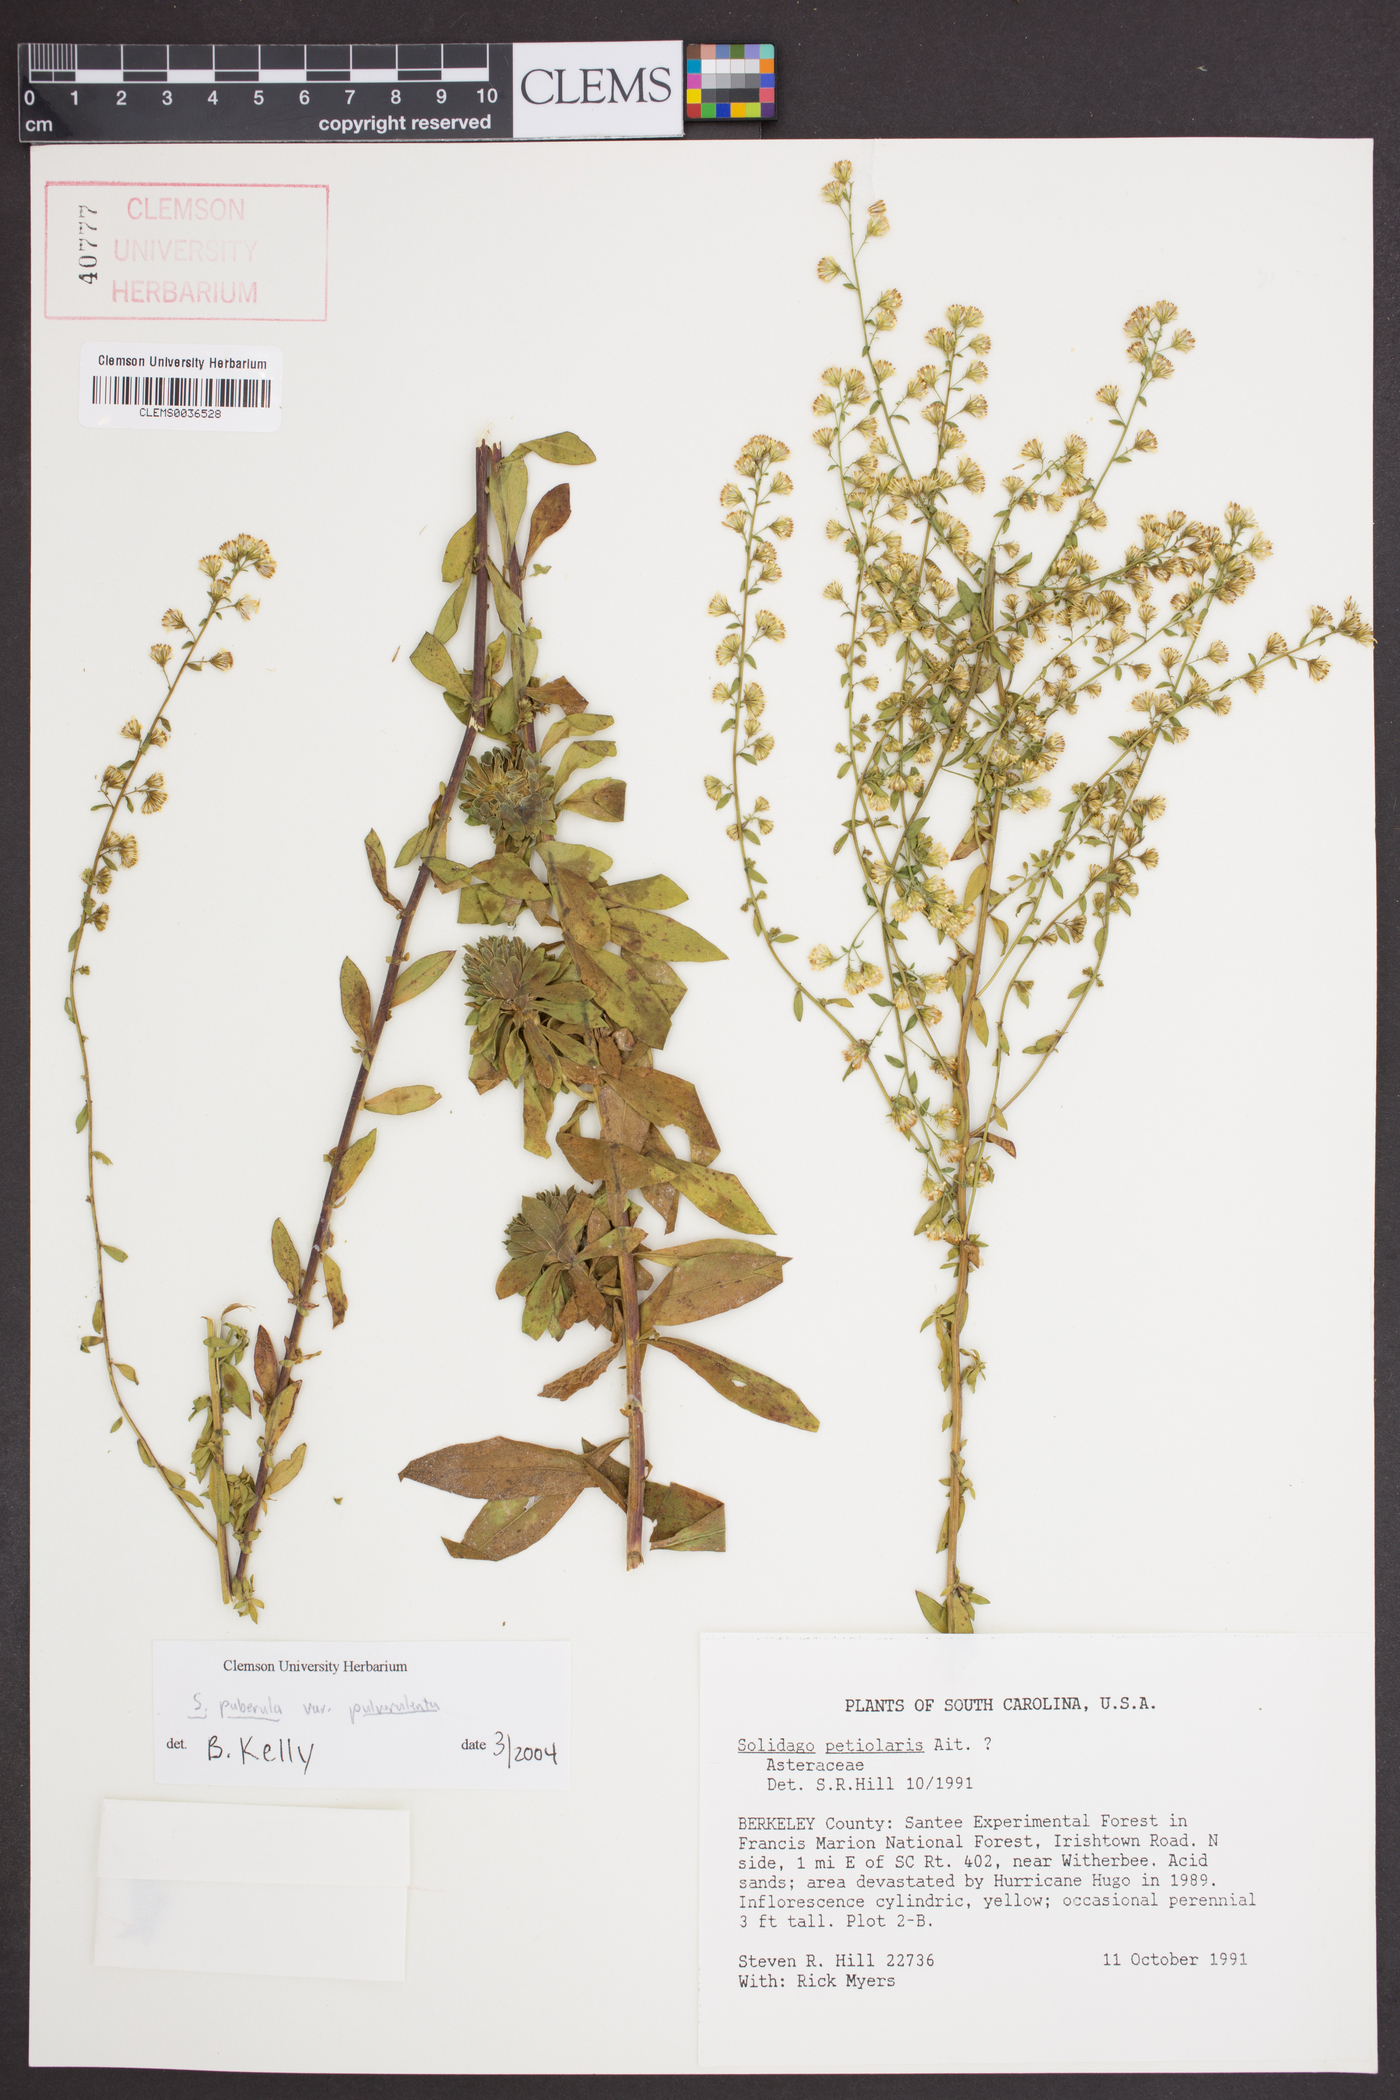 Solidago puberula subsp. pulverulenta image